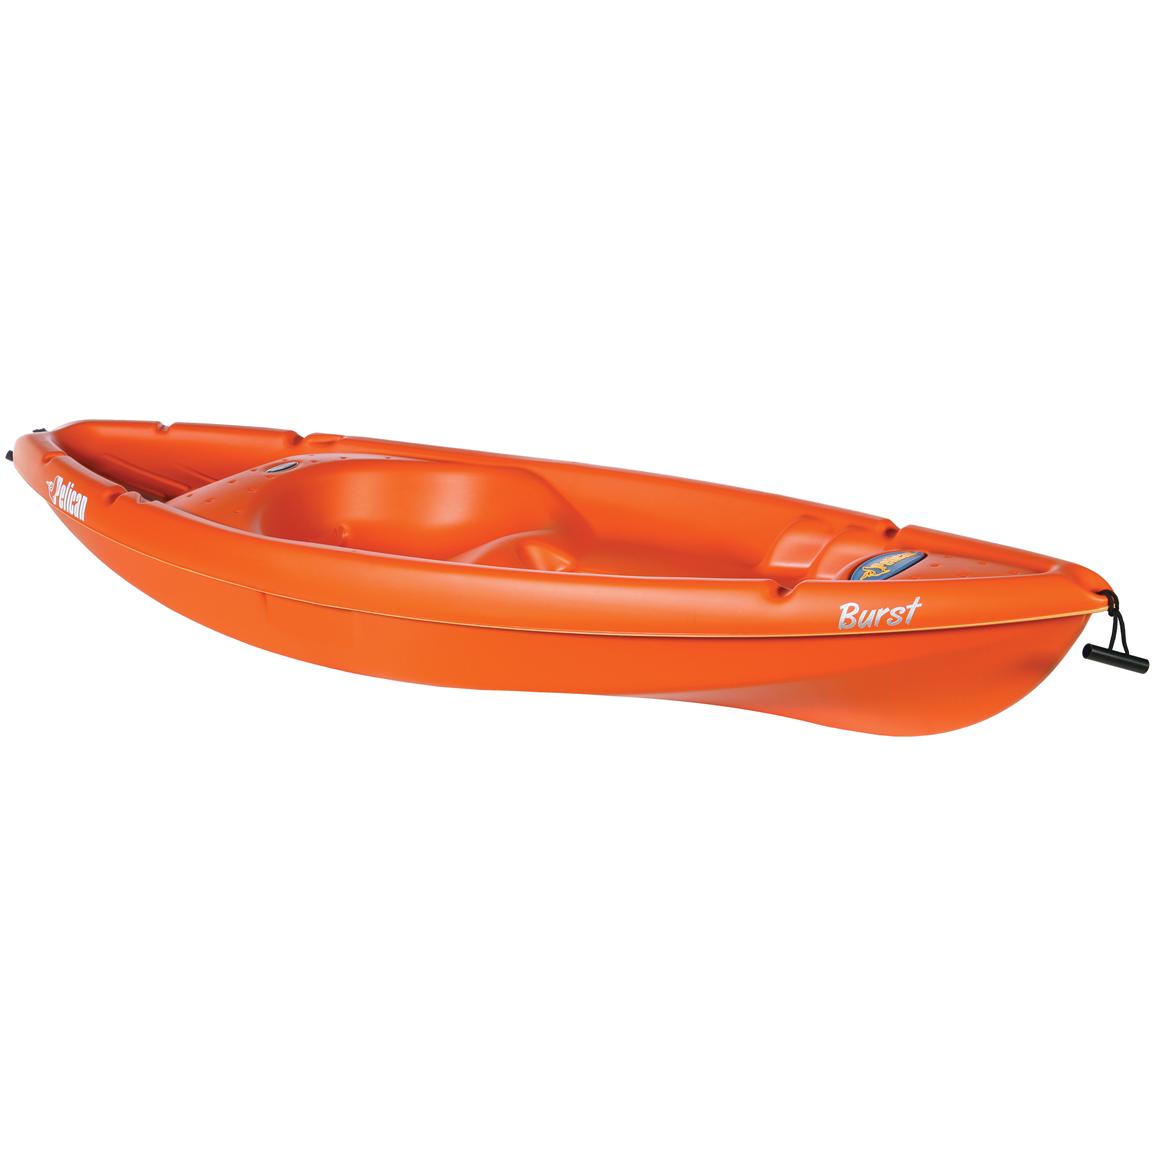 pelican™ burst sit - on - top kayak - 155244, kayaks